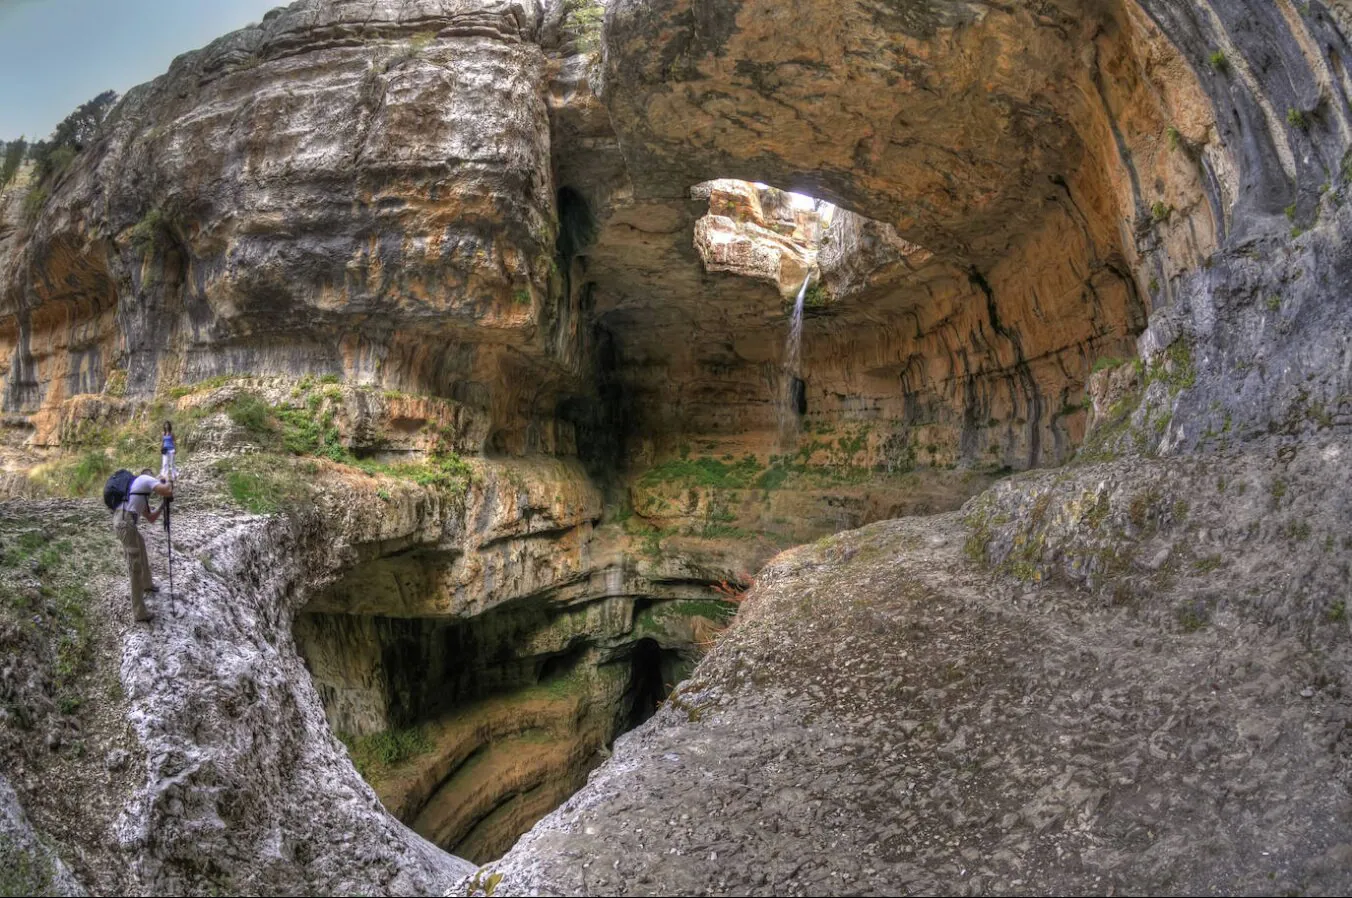 Cascada Baatara Gorge, Líbano. Un pozo vertical de agua helada derretida cae 250 metros a través de una cueva de piedra caliza. A lo largo de los siglos, el agua ha tallado tres arcos de piedra en la cámara principal al final de un desfiladero vertiginosamente empinado. La naturaleza curva de la erosión y la abundancia de vegetación dan la impresión de un paisaje de ensueño.